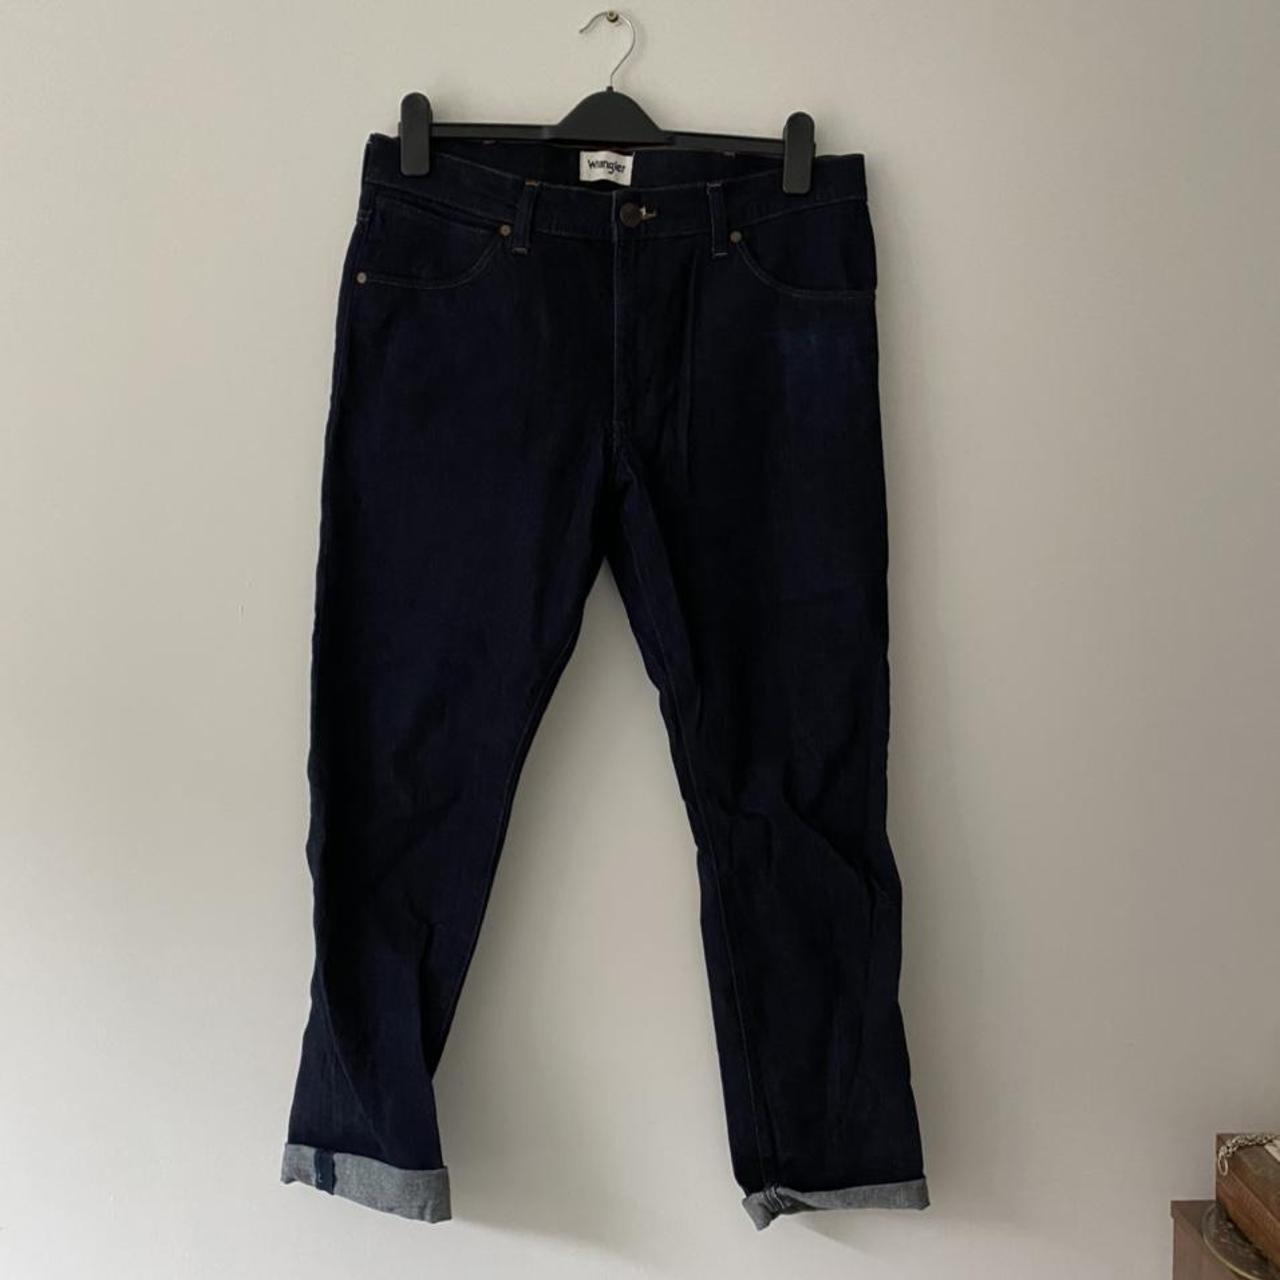 Wrangler indigo skinny jeans // 34”32 #jeans... - Depop